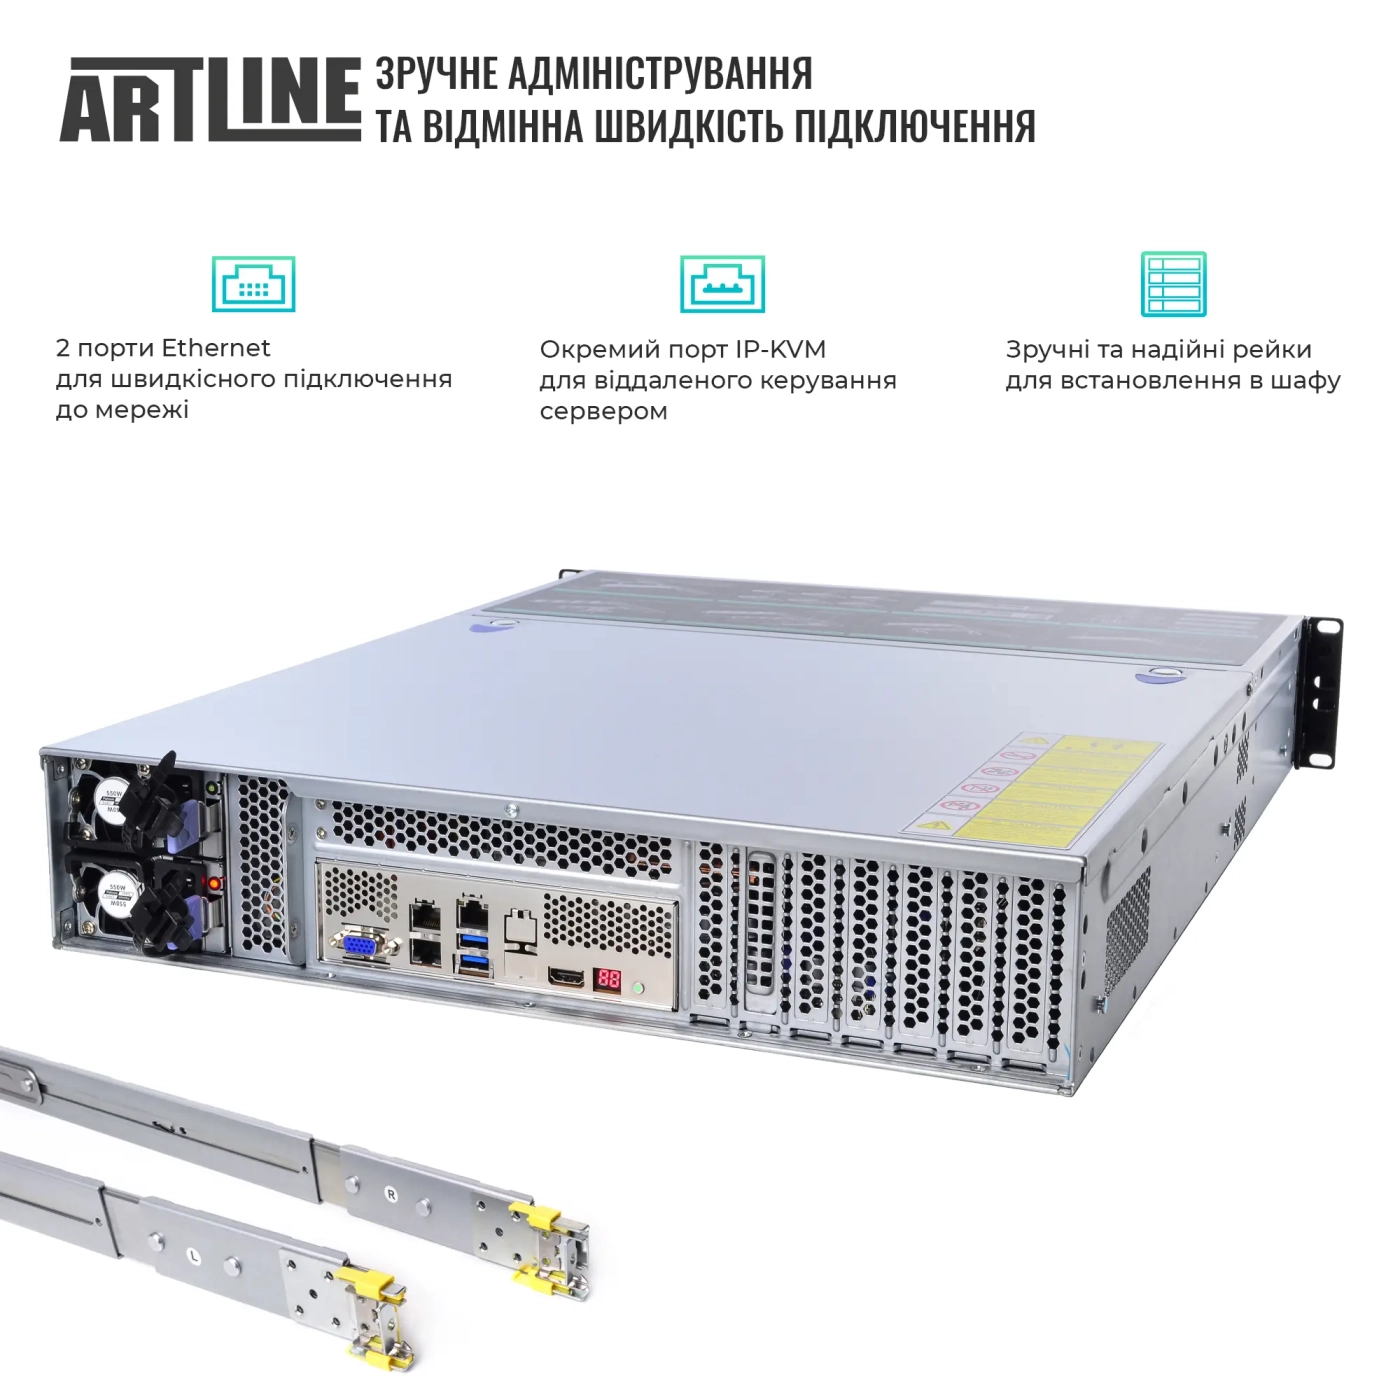 Купить Сервер ARTLINE Business R34 (R34v21) - фото 3